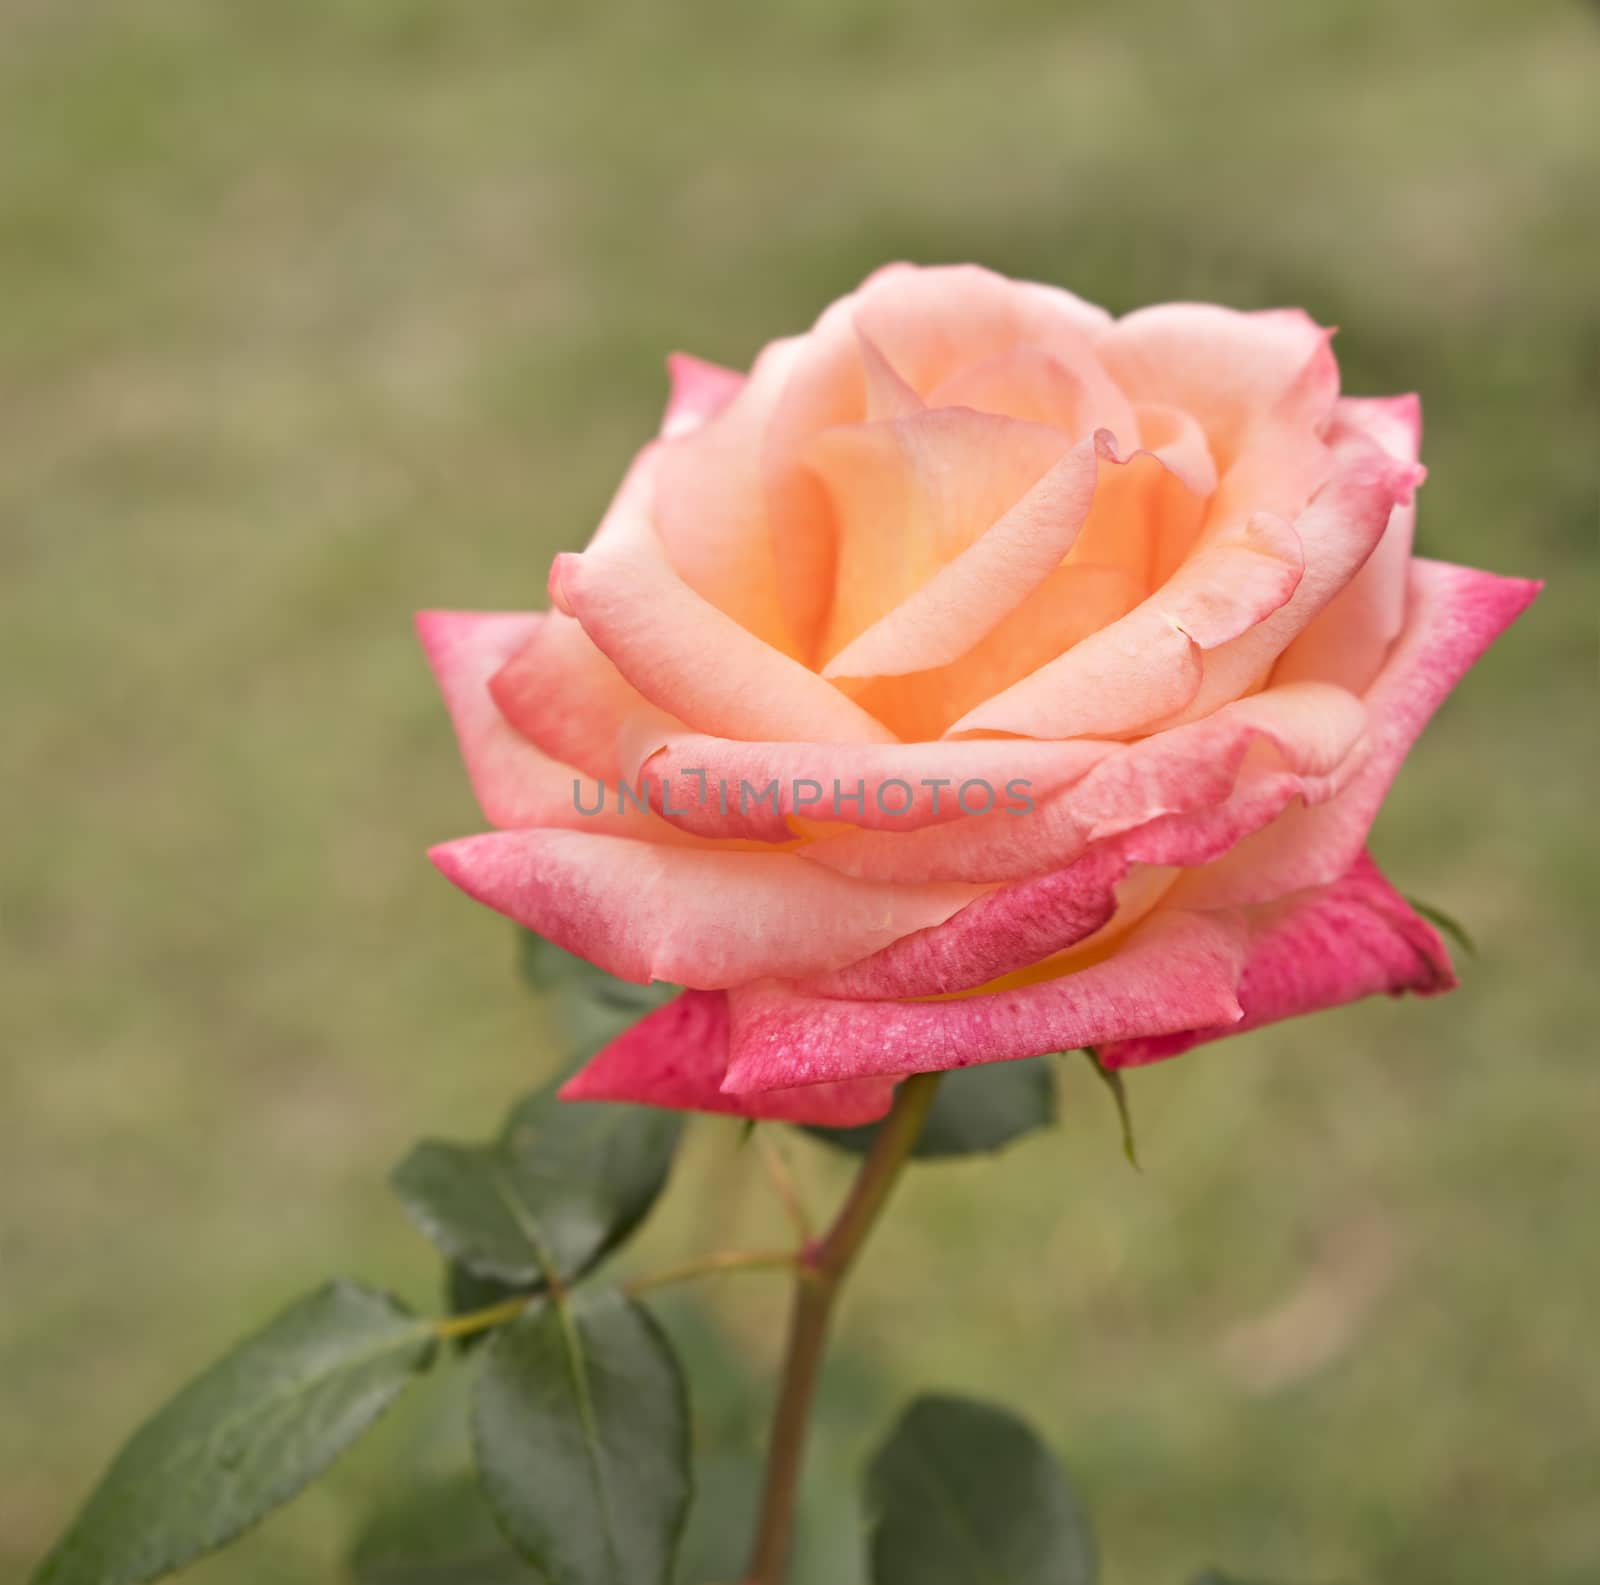 Beautiful rose flower in garden growing by sherj